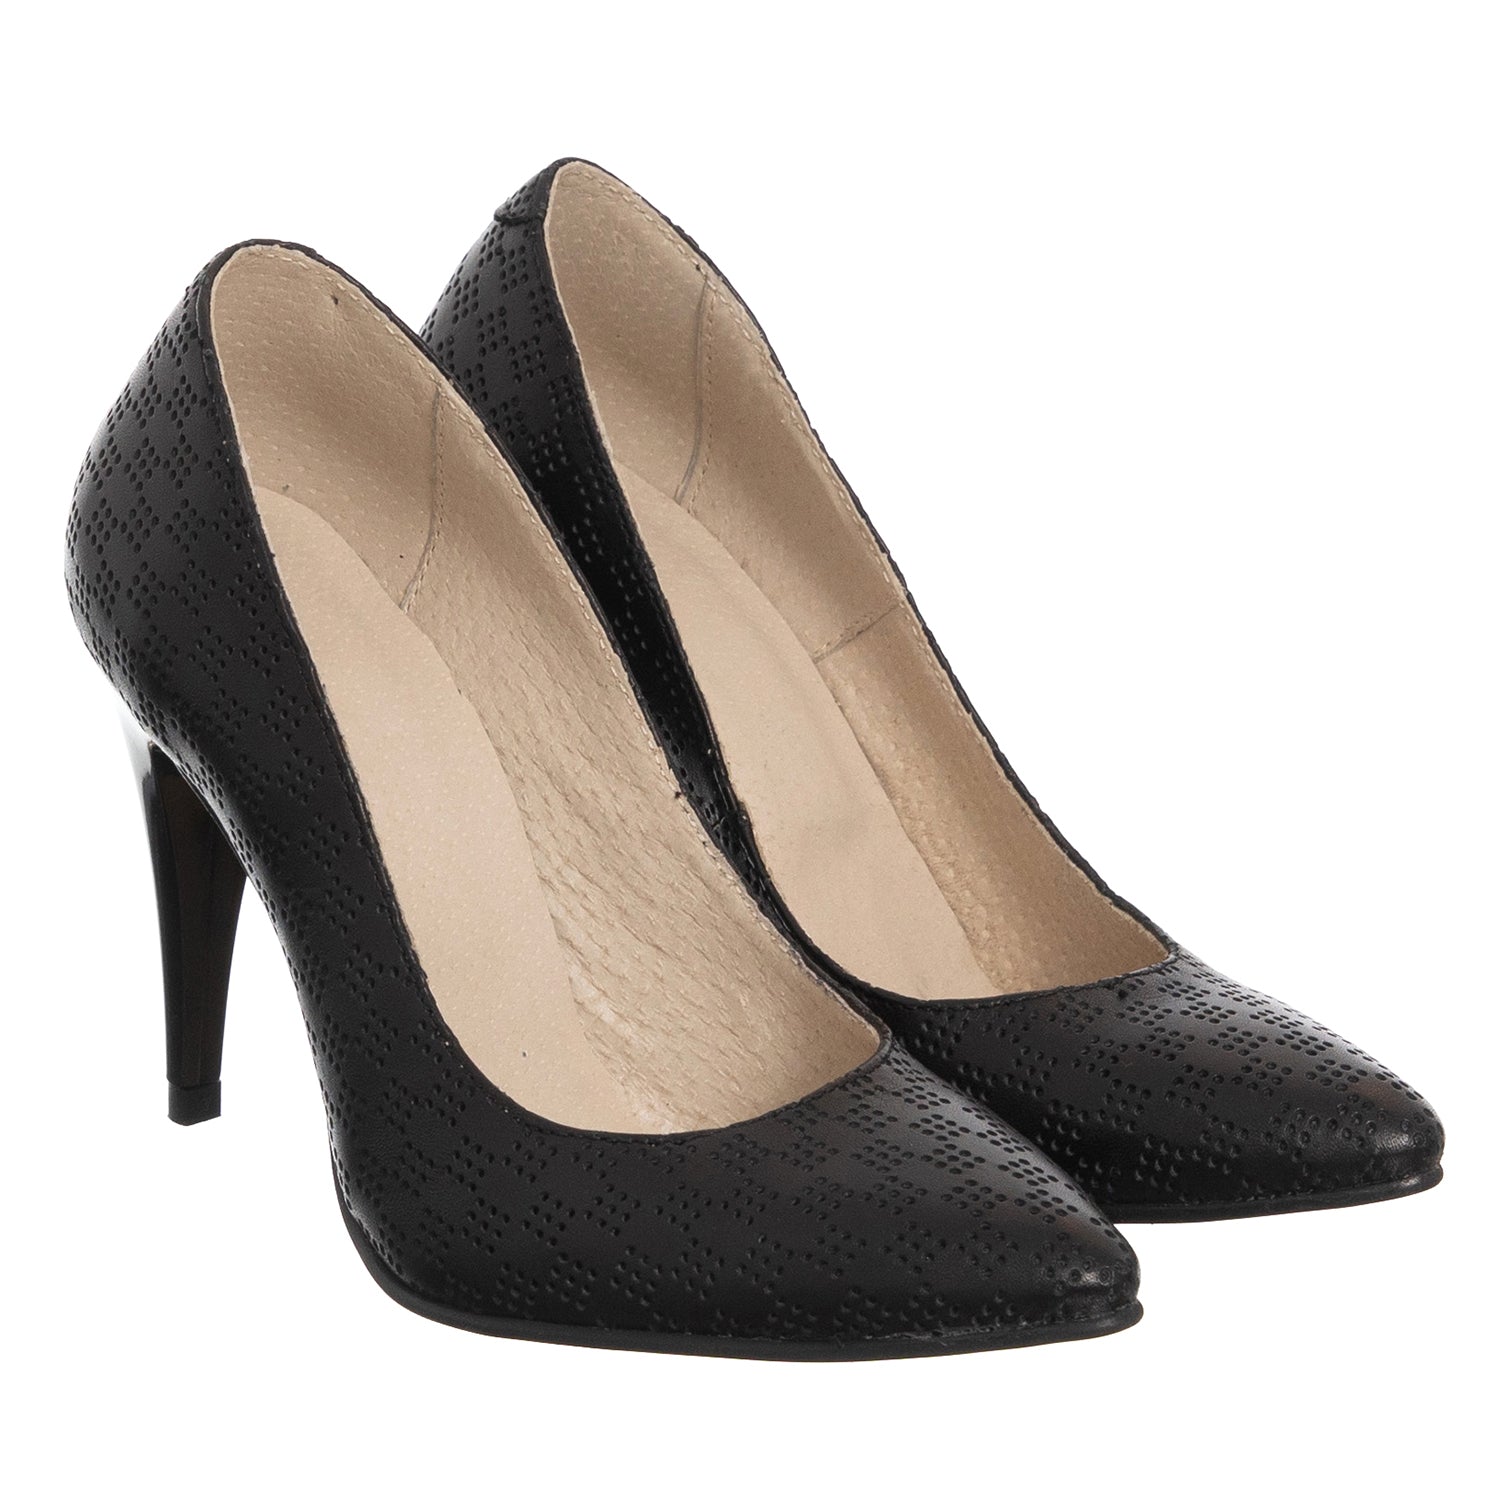 ZELLINI Pantofi Dama Stiletto Piele Naturala, Negru Cu Model XOXO 8